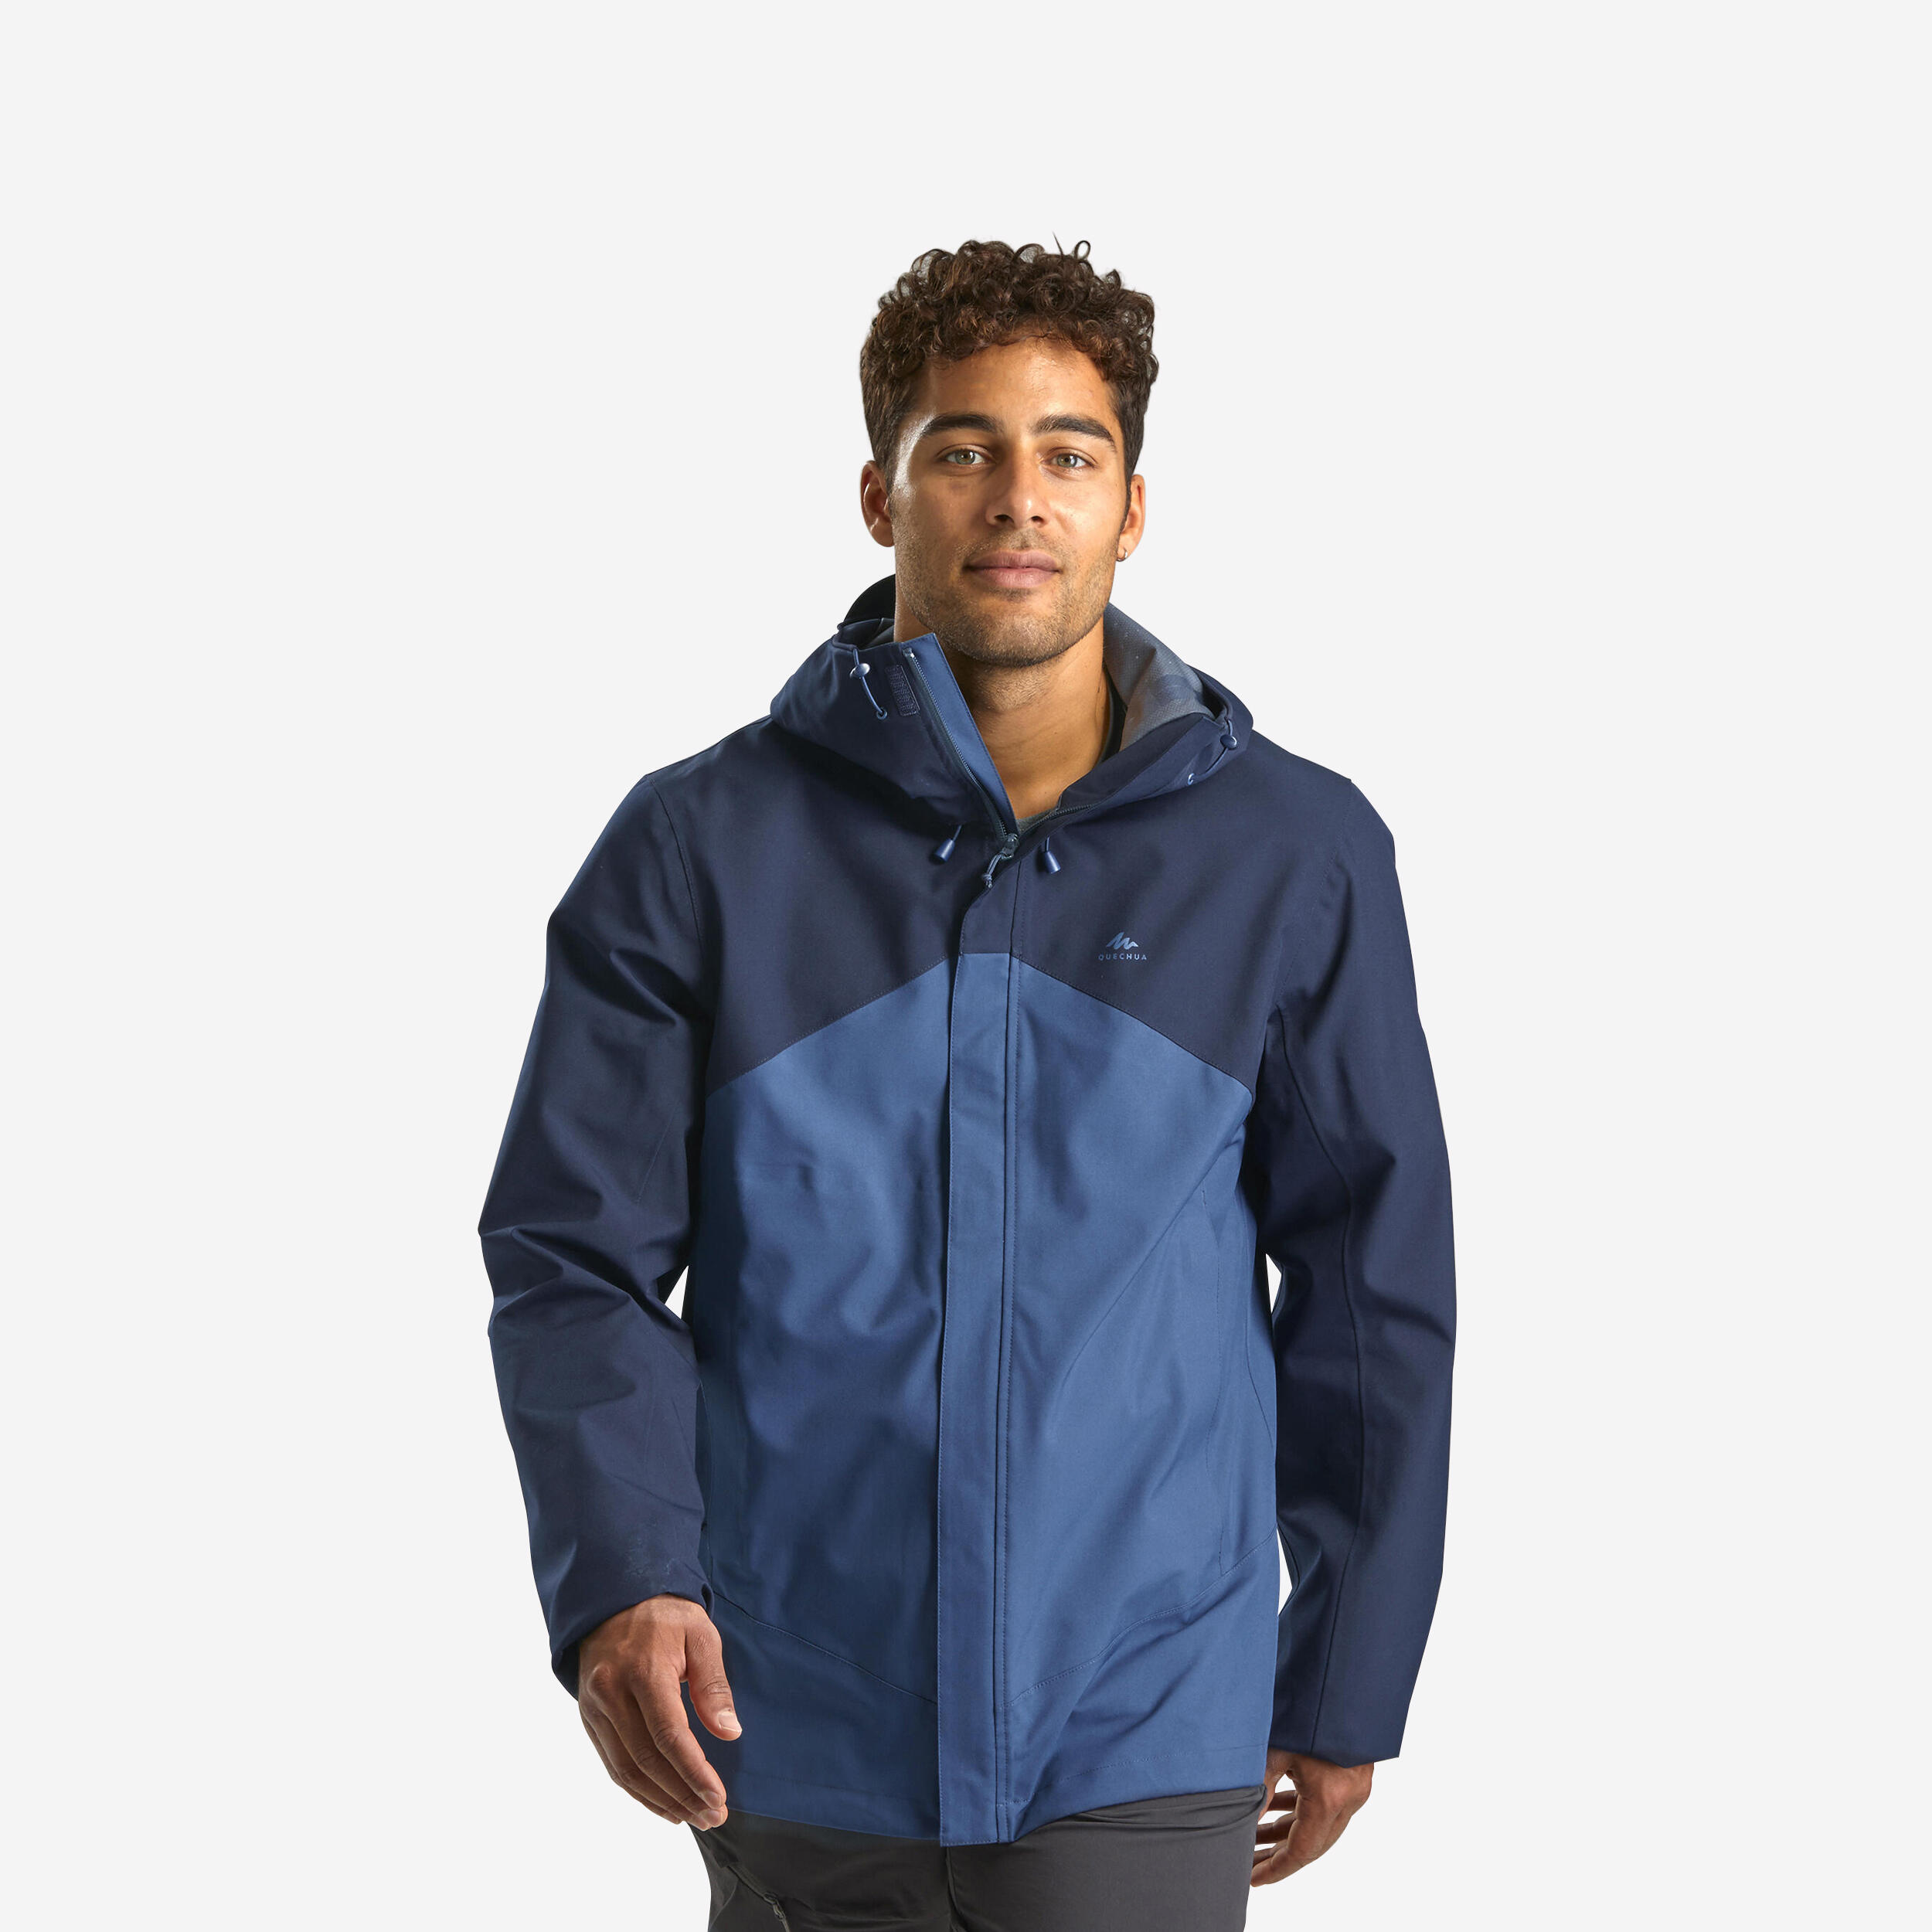 Manteau de randonnée imperméable homme – MH 150 - QUECHUA